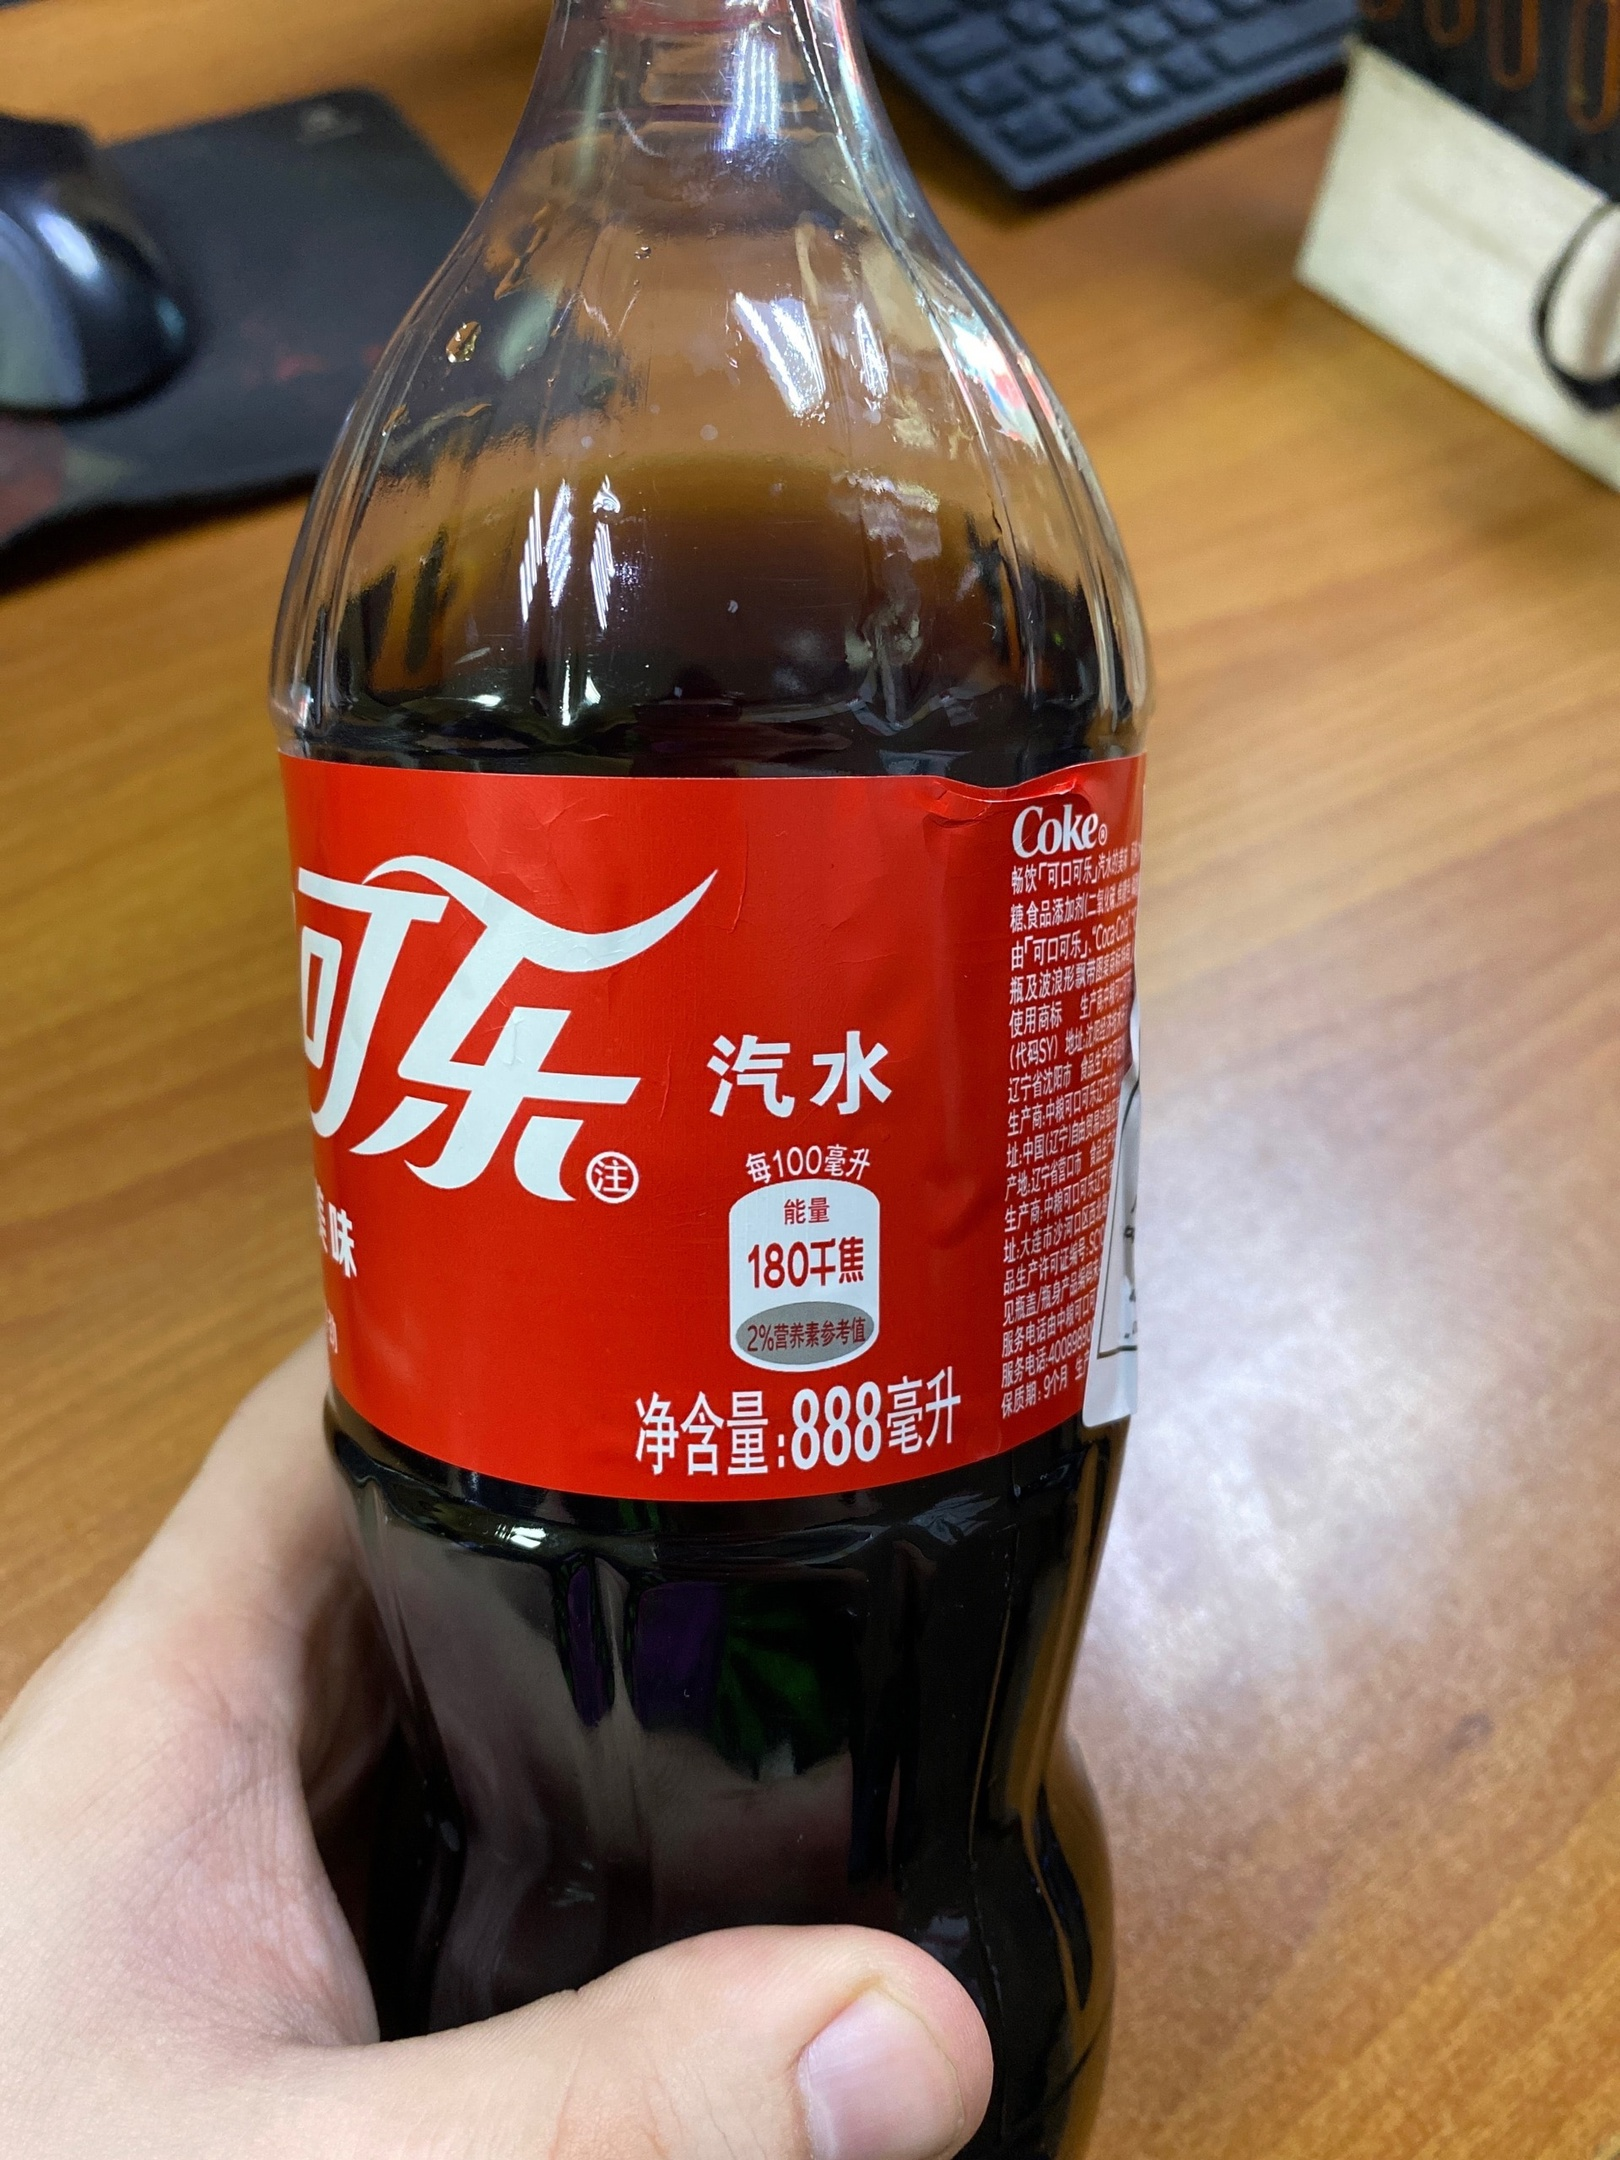 Интересный факт о Кока-Коле из Китая | Пикабу